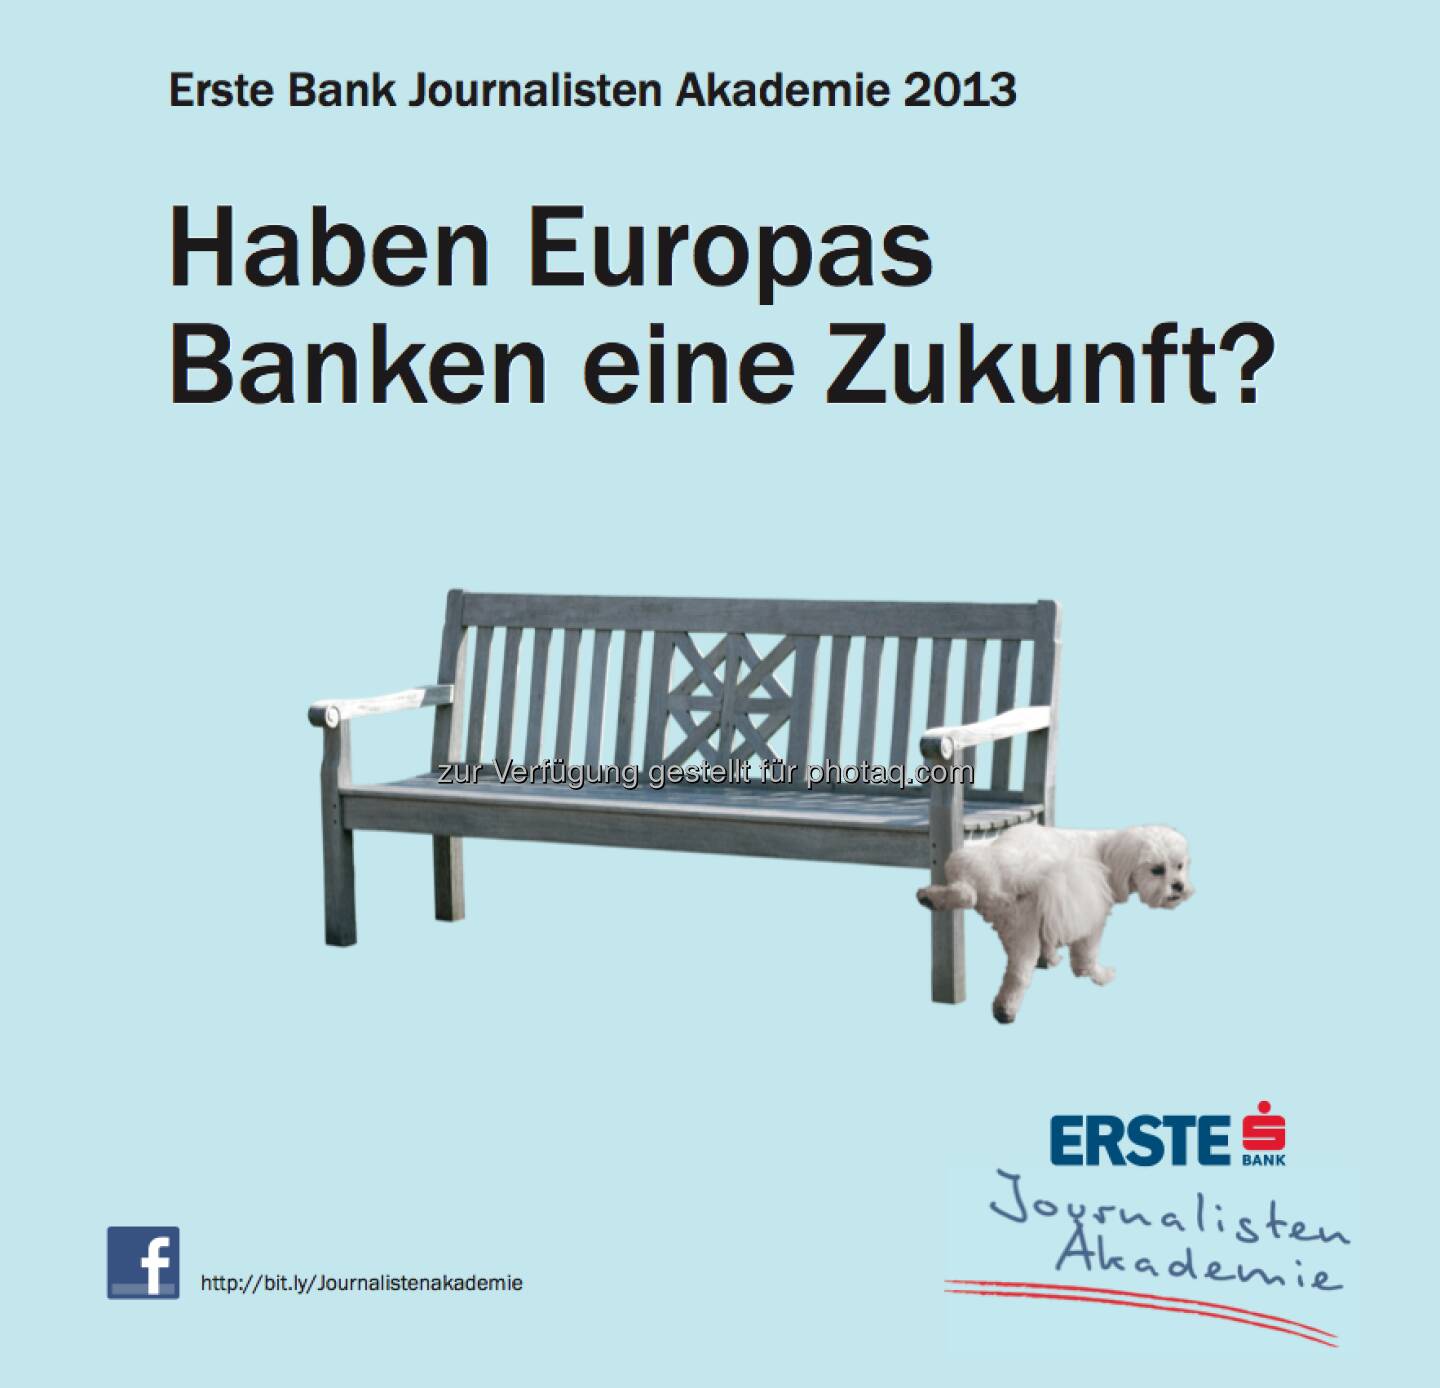 Haben Europas Banken eine Zukunft? Erste Bank mit witziger Einladung zur Journalistenakademie